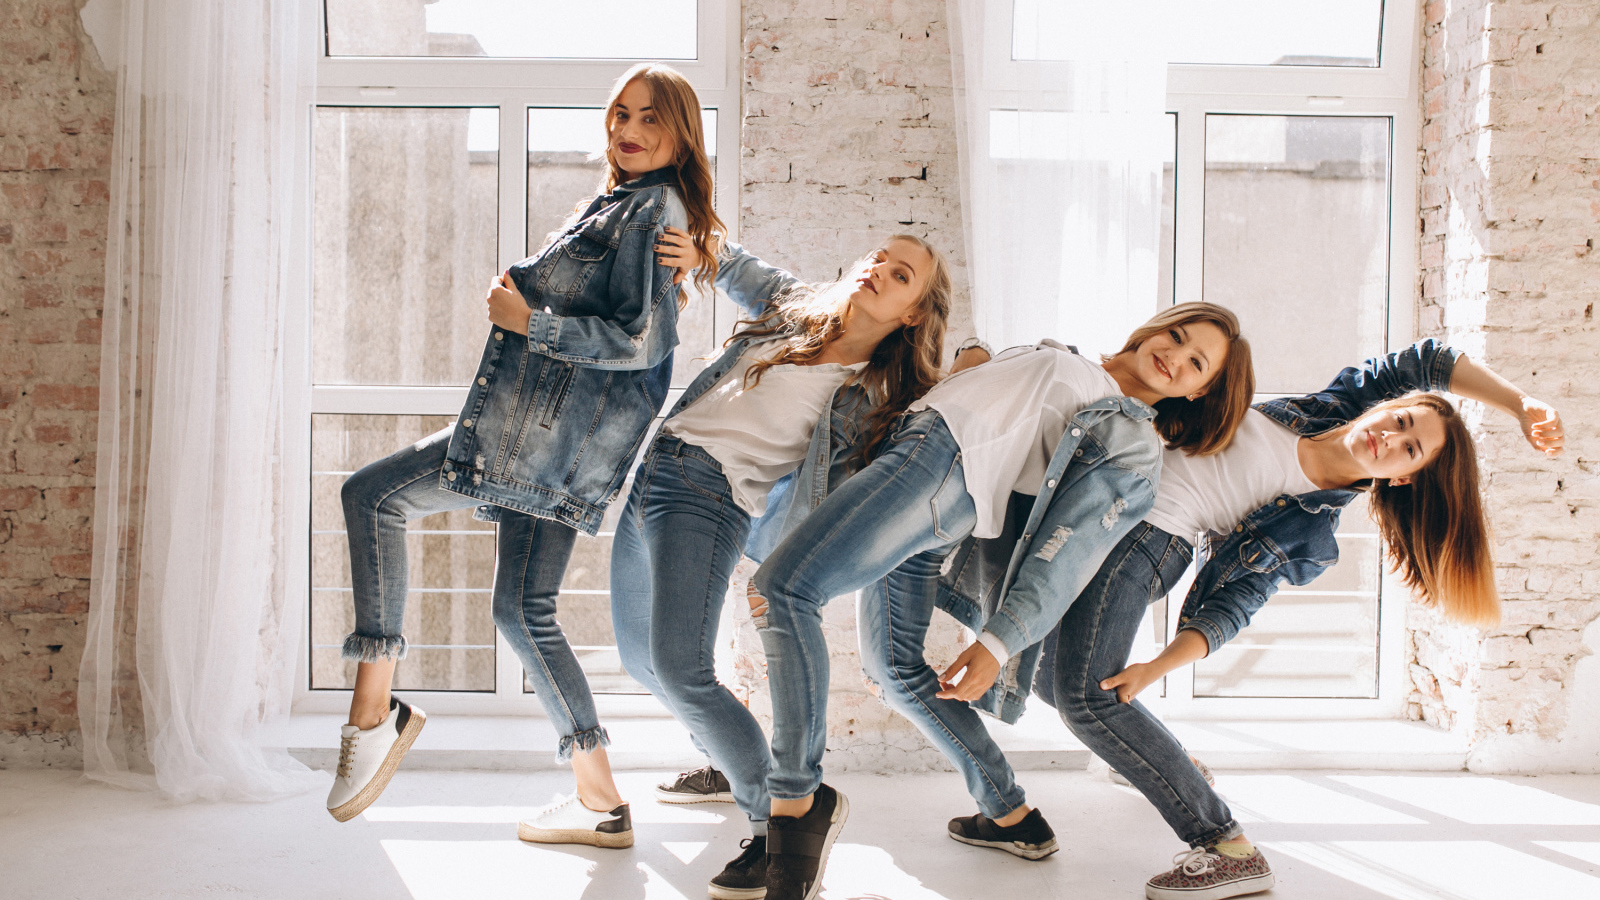 Четыре девушки в джинсовых костюмах занимаются танцами